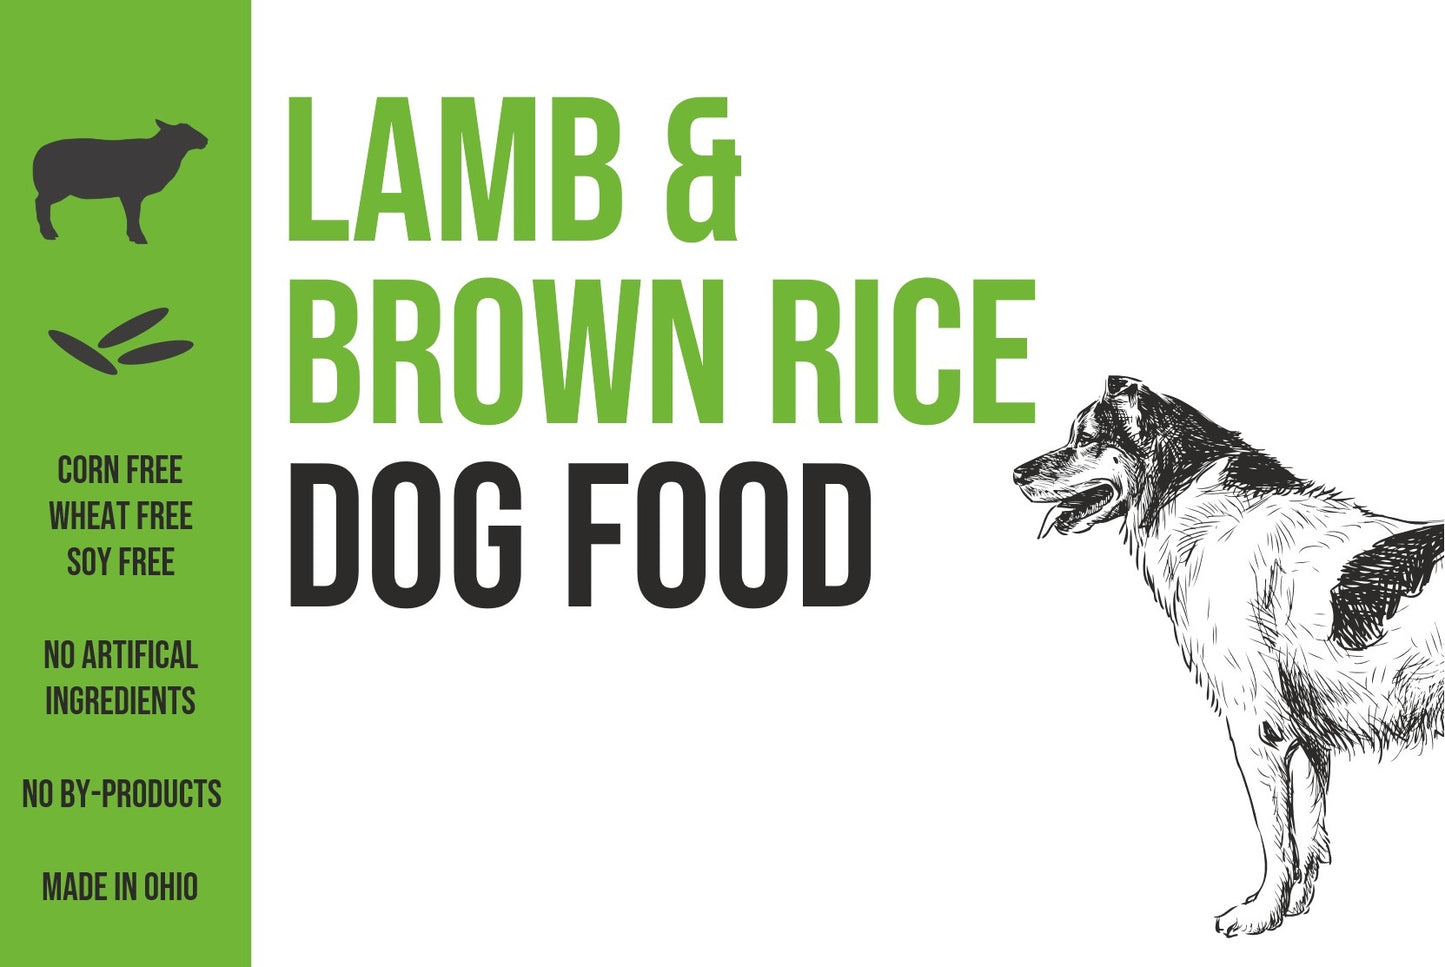 Lamb & Brown Rice